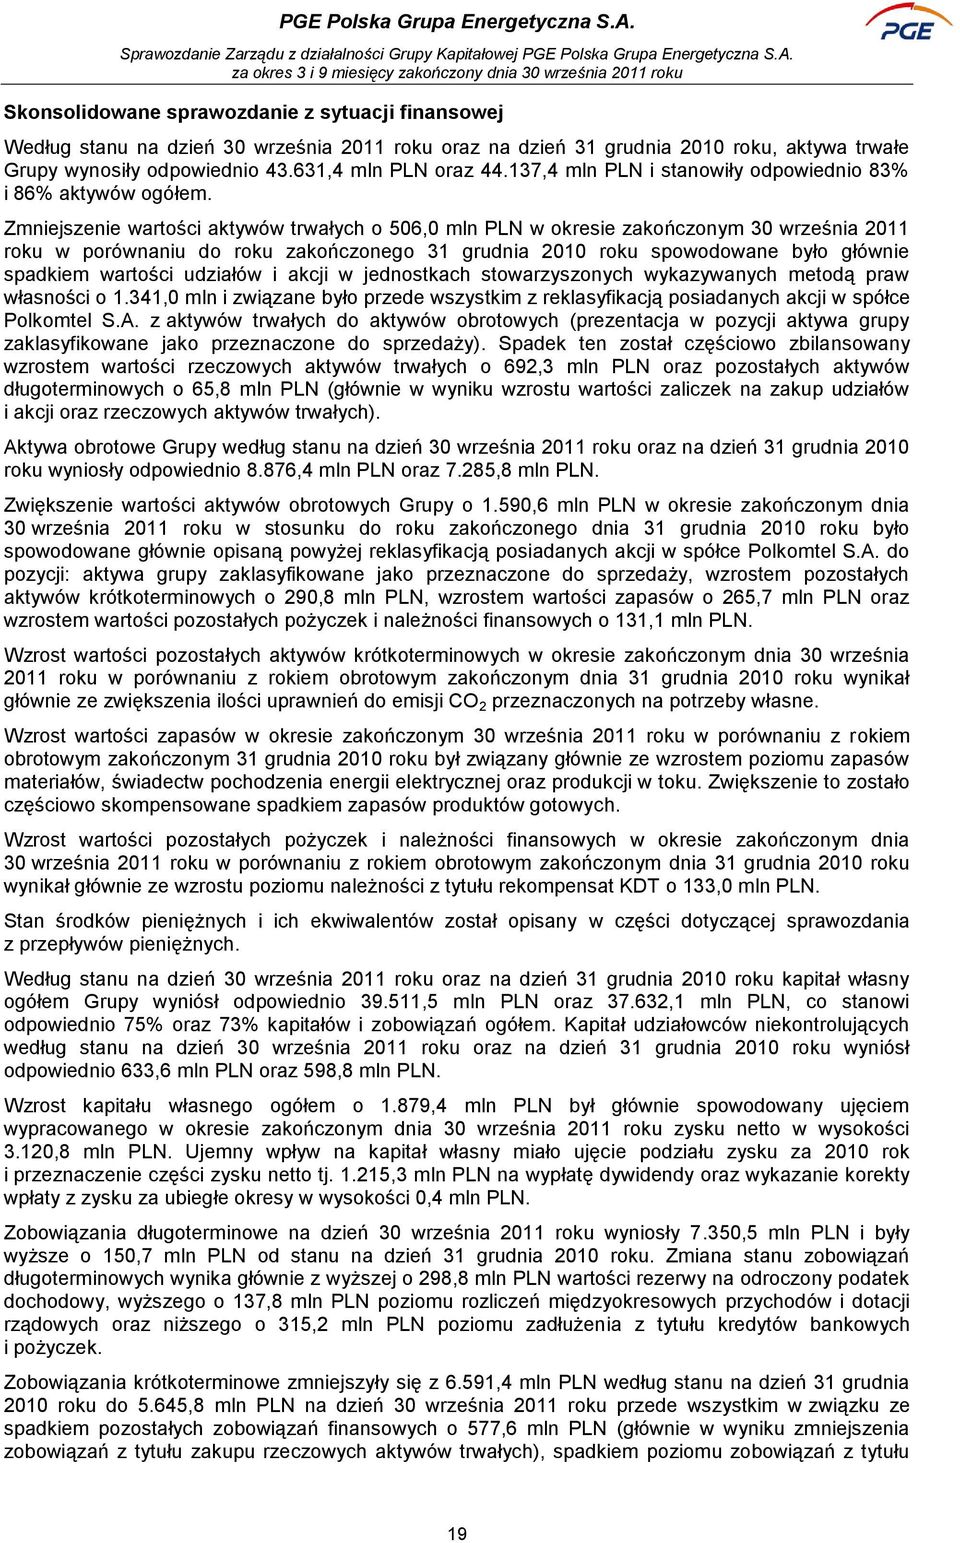 Zmniejszenie wartości aktywów trwałych o 506,0 mln PLN w okresie zakończonym 30 września 2011 roku w porównaniu do roku zakończonego 31 grudnia 2010 roku spowodowane było głównie spadkiem wartości